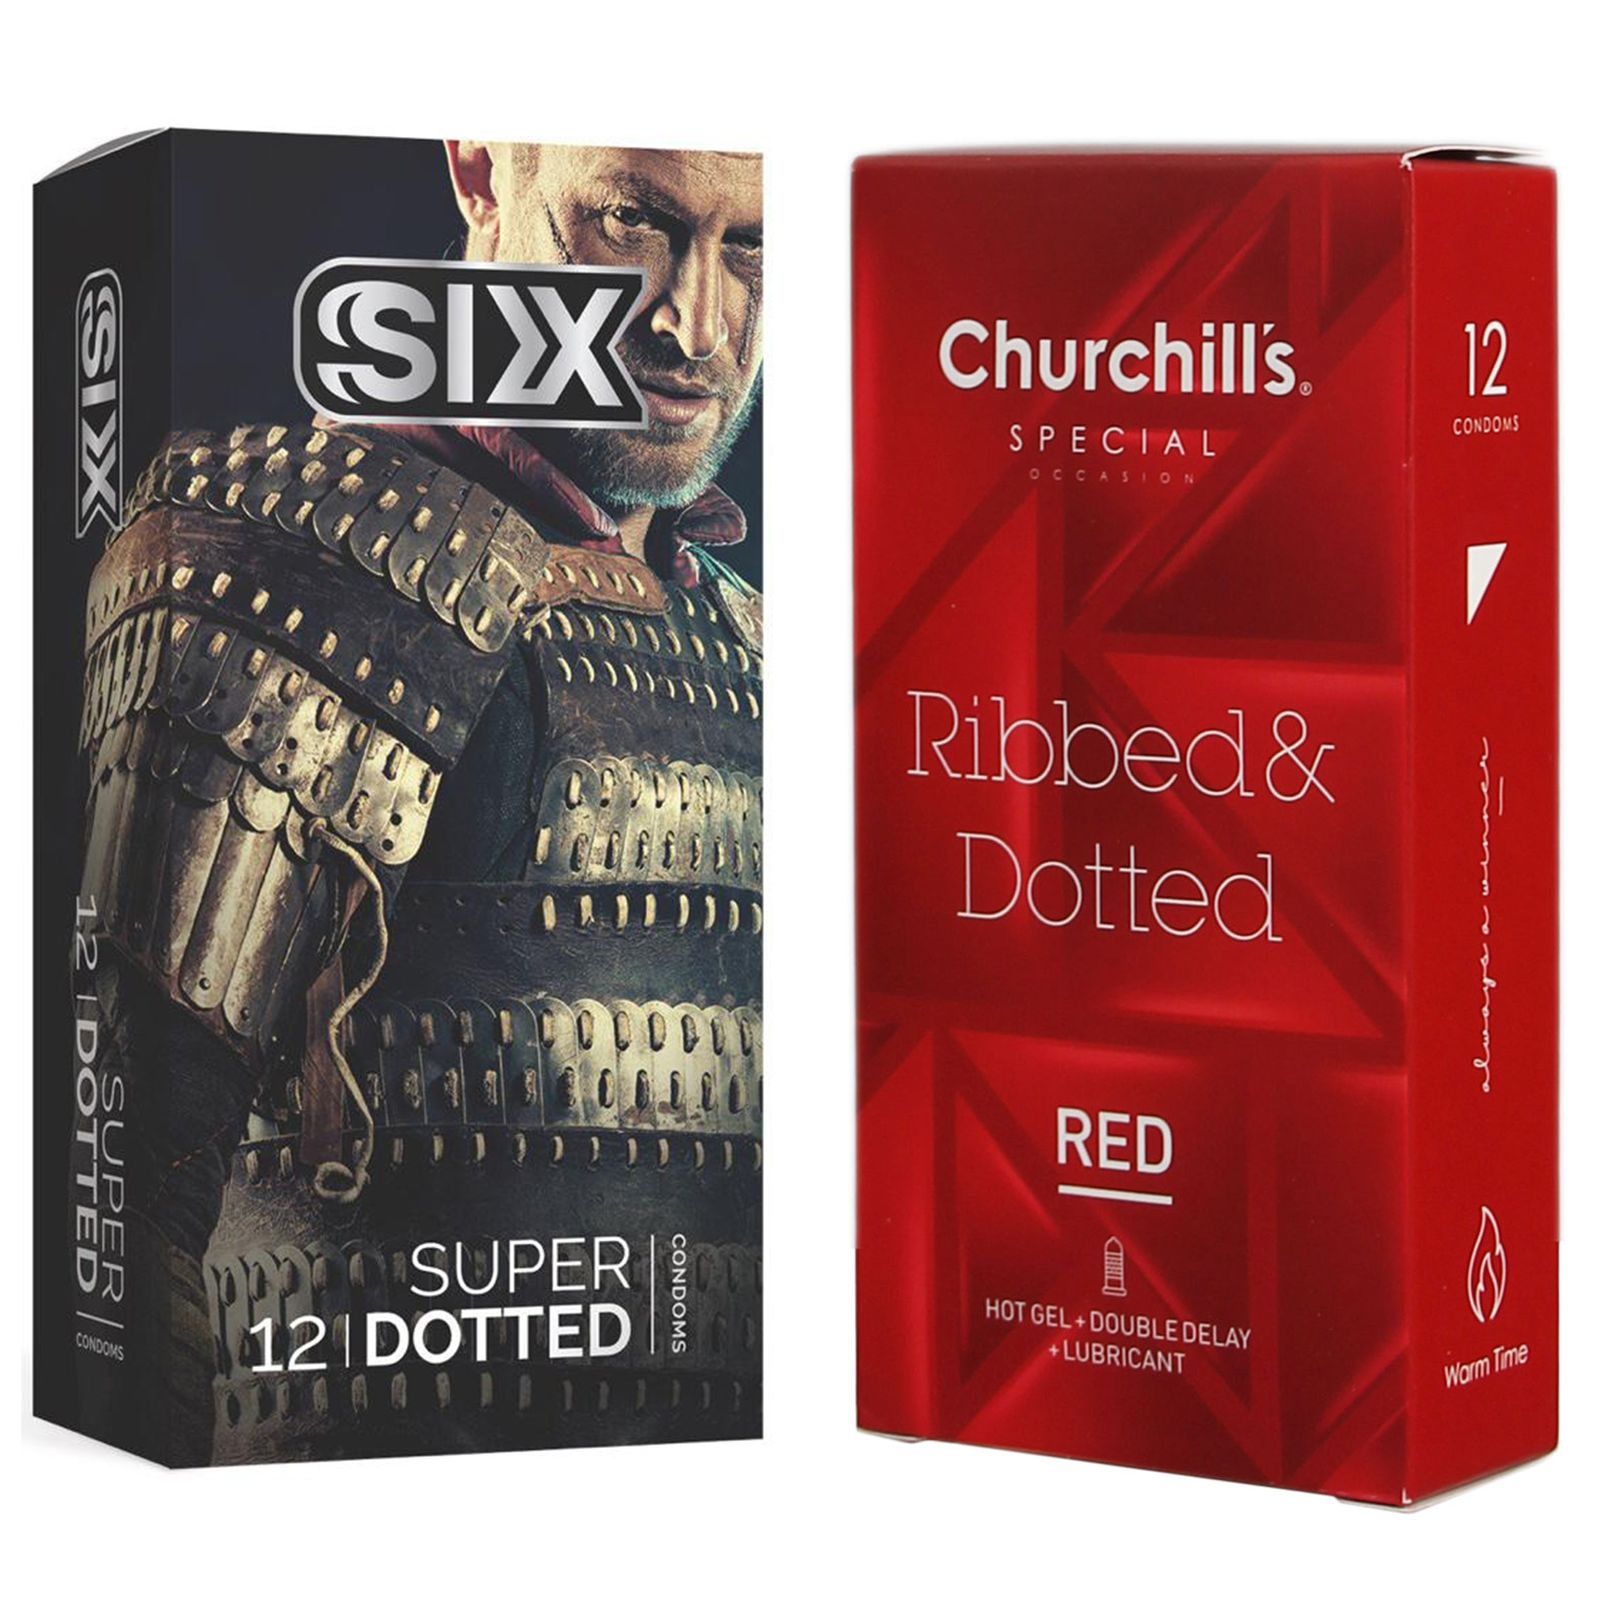 کاندوم چرچیلز مدل Ribbed & Dotted Red بسته 12 عددی به همراه کاندوم سیکس مدل خاردار بسته 12 عددی -  - 1